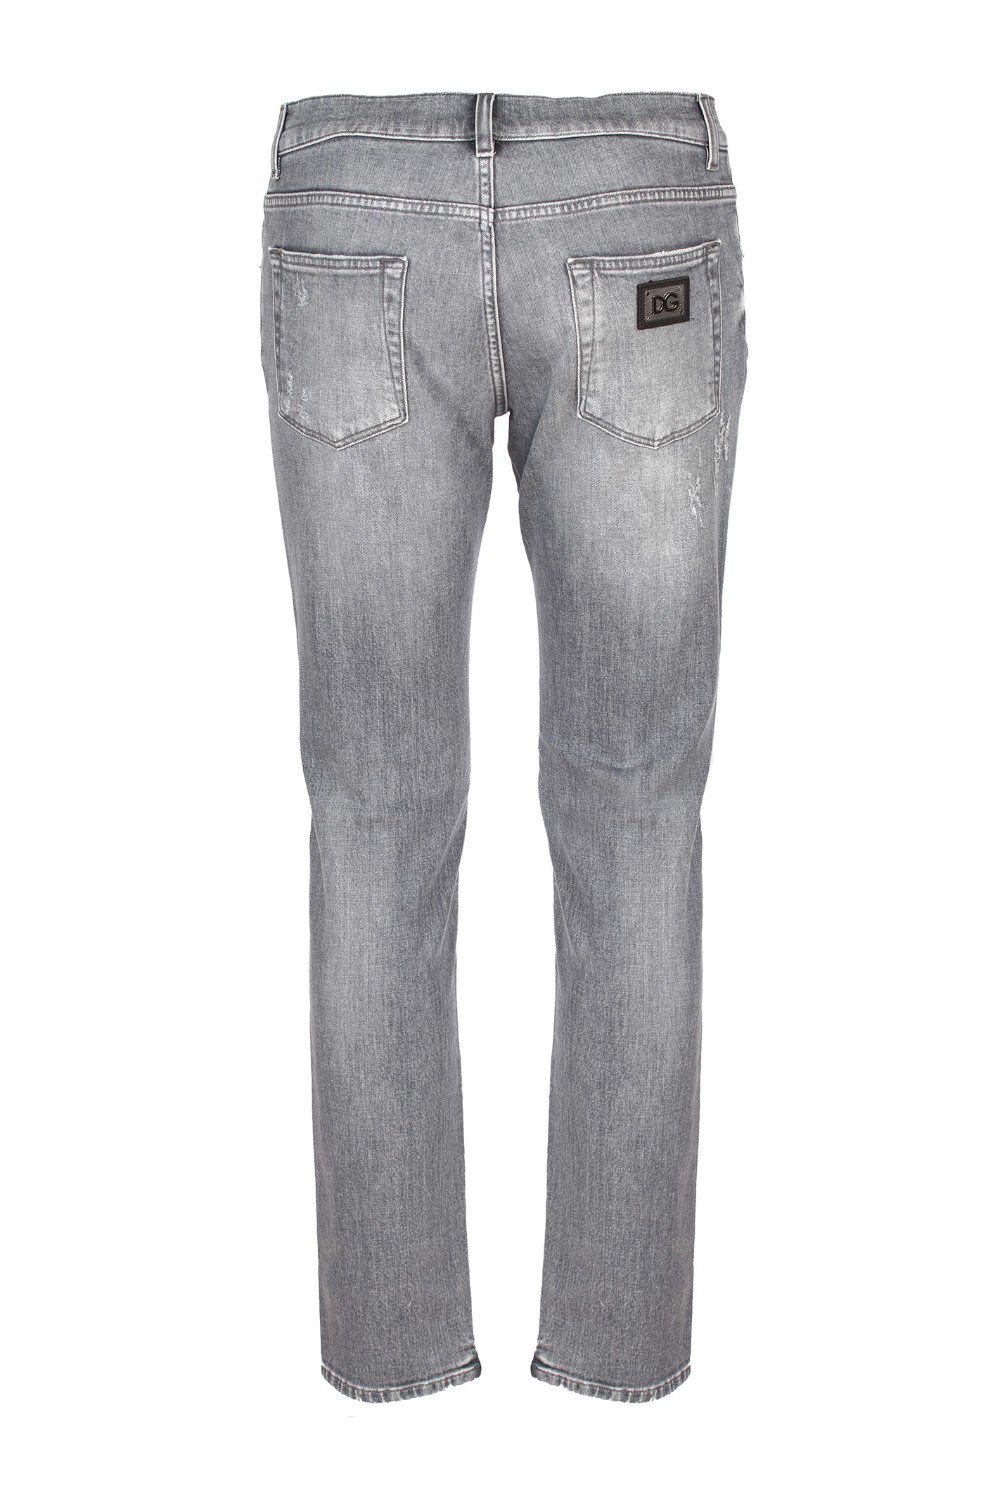 shop DOLCE & GABBANA Saldi Jeans: Dolce&Gabbana jeans slim stretch.
Modello cinque tasche con piccole rotture.
Regular fit.
Chiusura con bottone e zip.
Targhetta metallica logata sul retro.
Composizione: 98% cotone 2% elastam.
Made in Italy.. GY07CD G8BA1-S9001 number 4309414